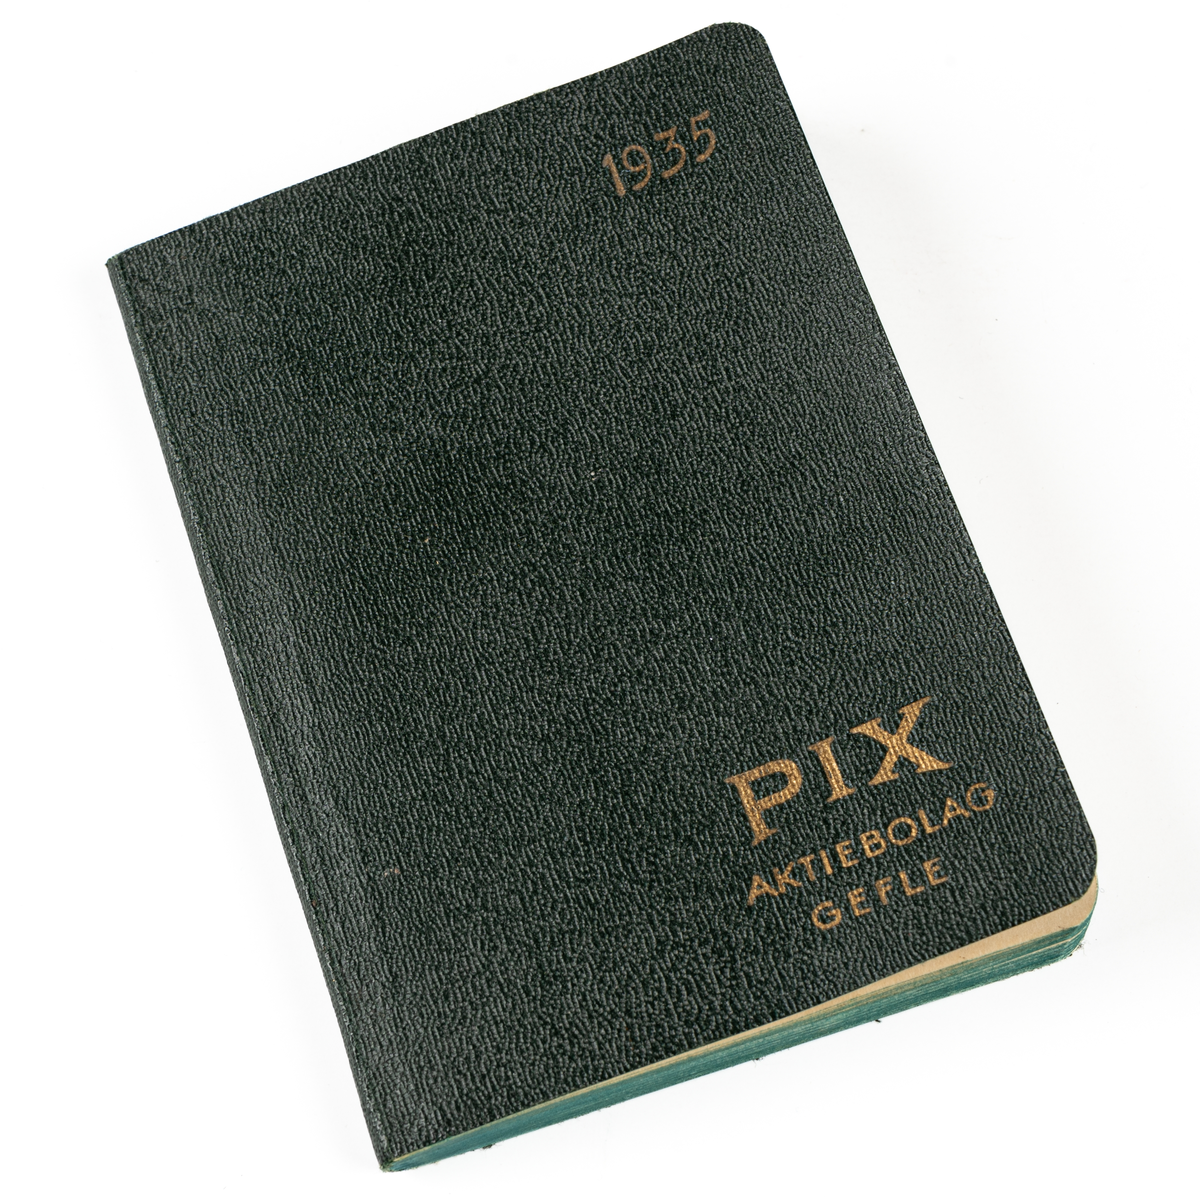 Almanacka, från 1935. Grön med guldtryck på pärmen "1935 PIX AKTIEBOLAG GEFLE".